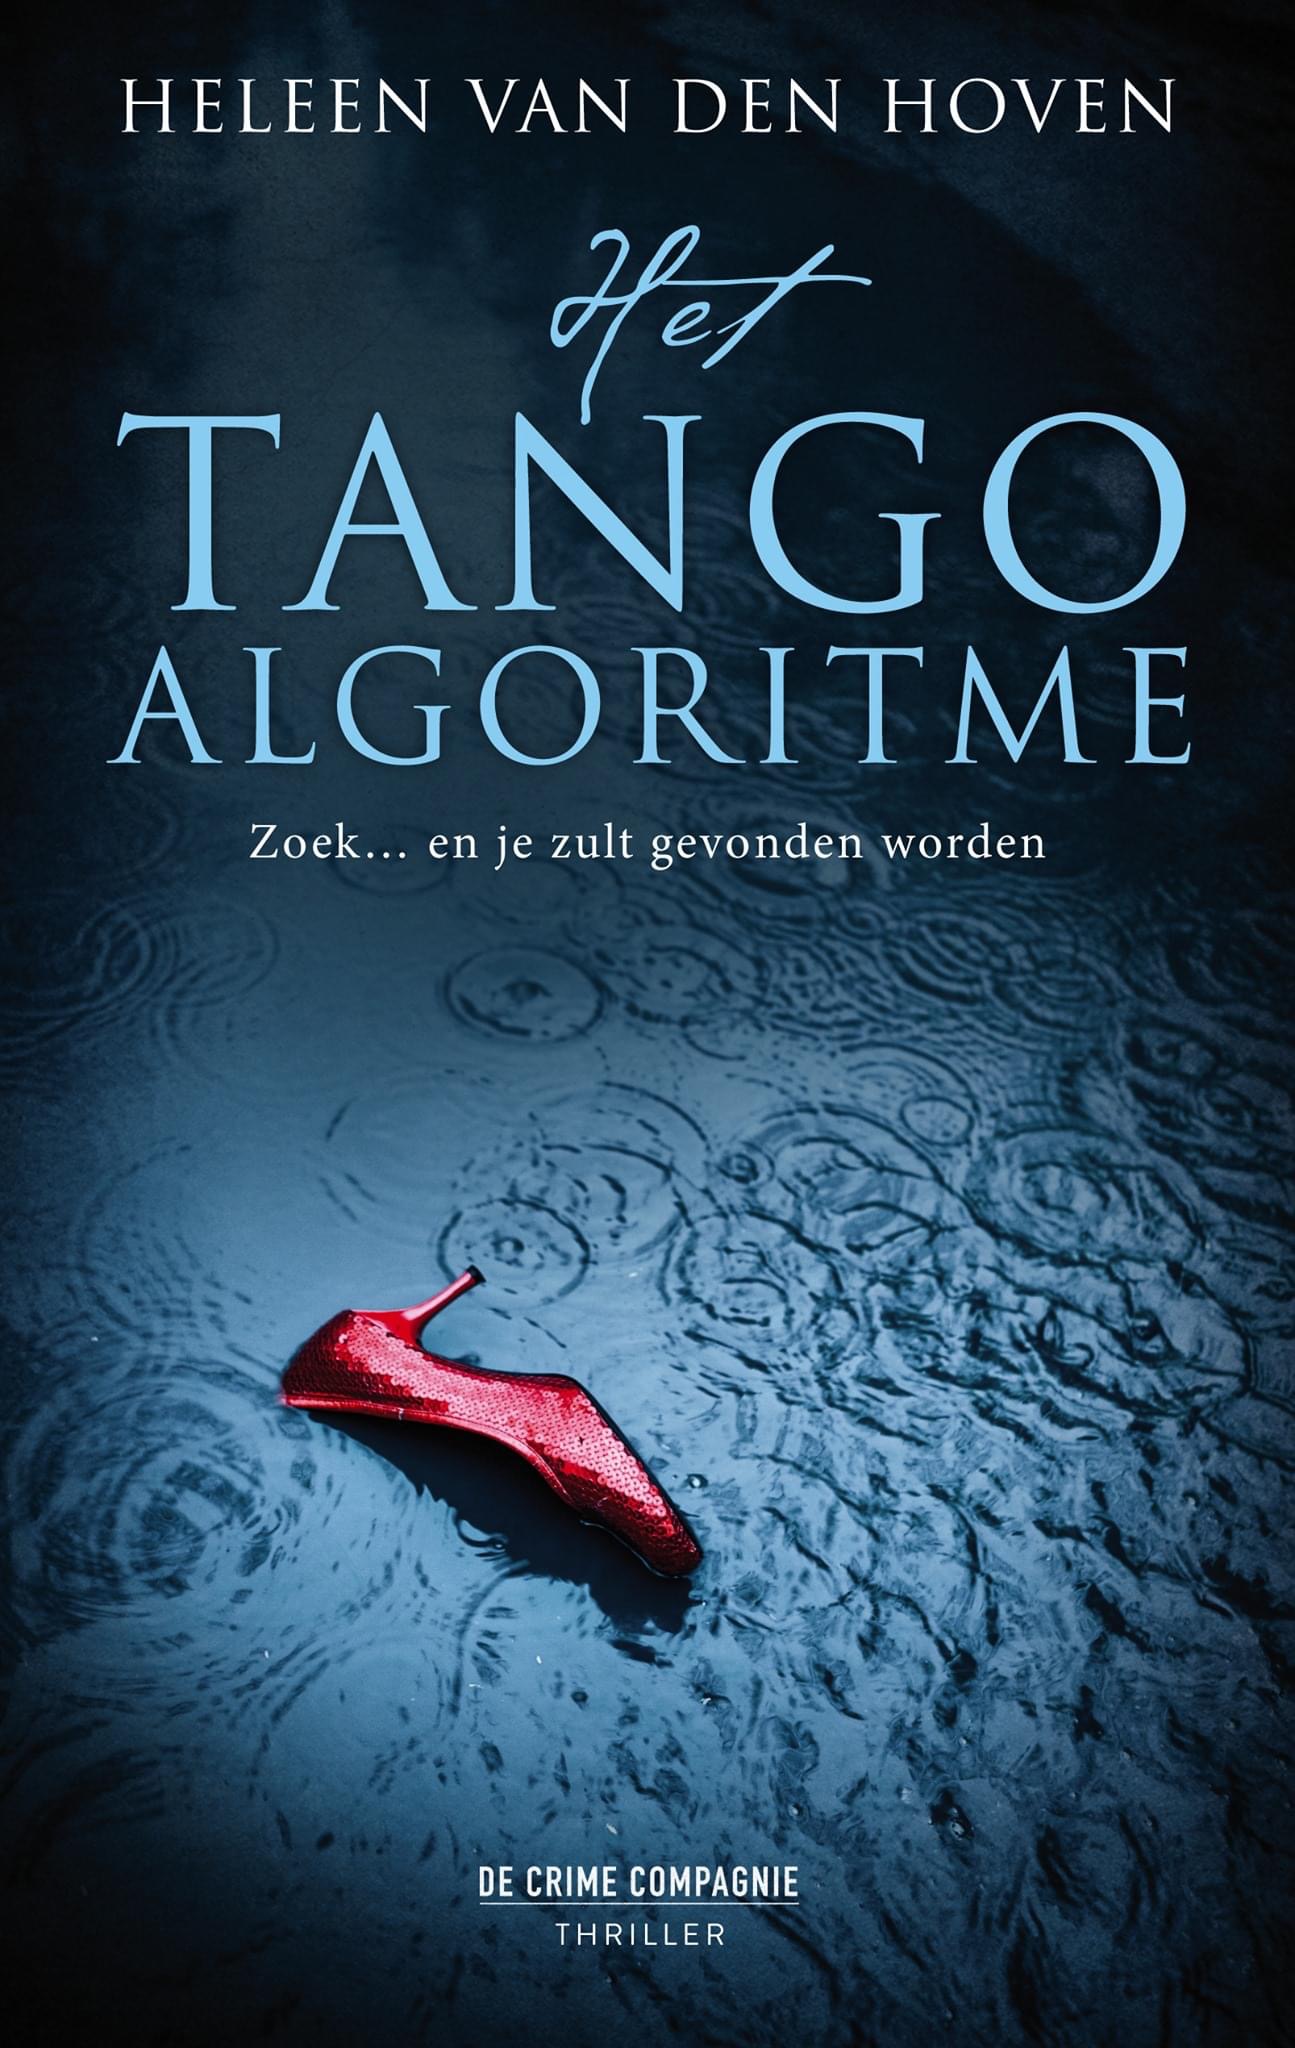 Het omslag van Het Tango algoritme